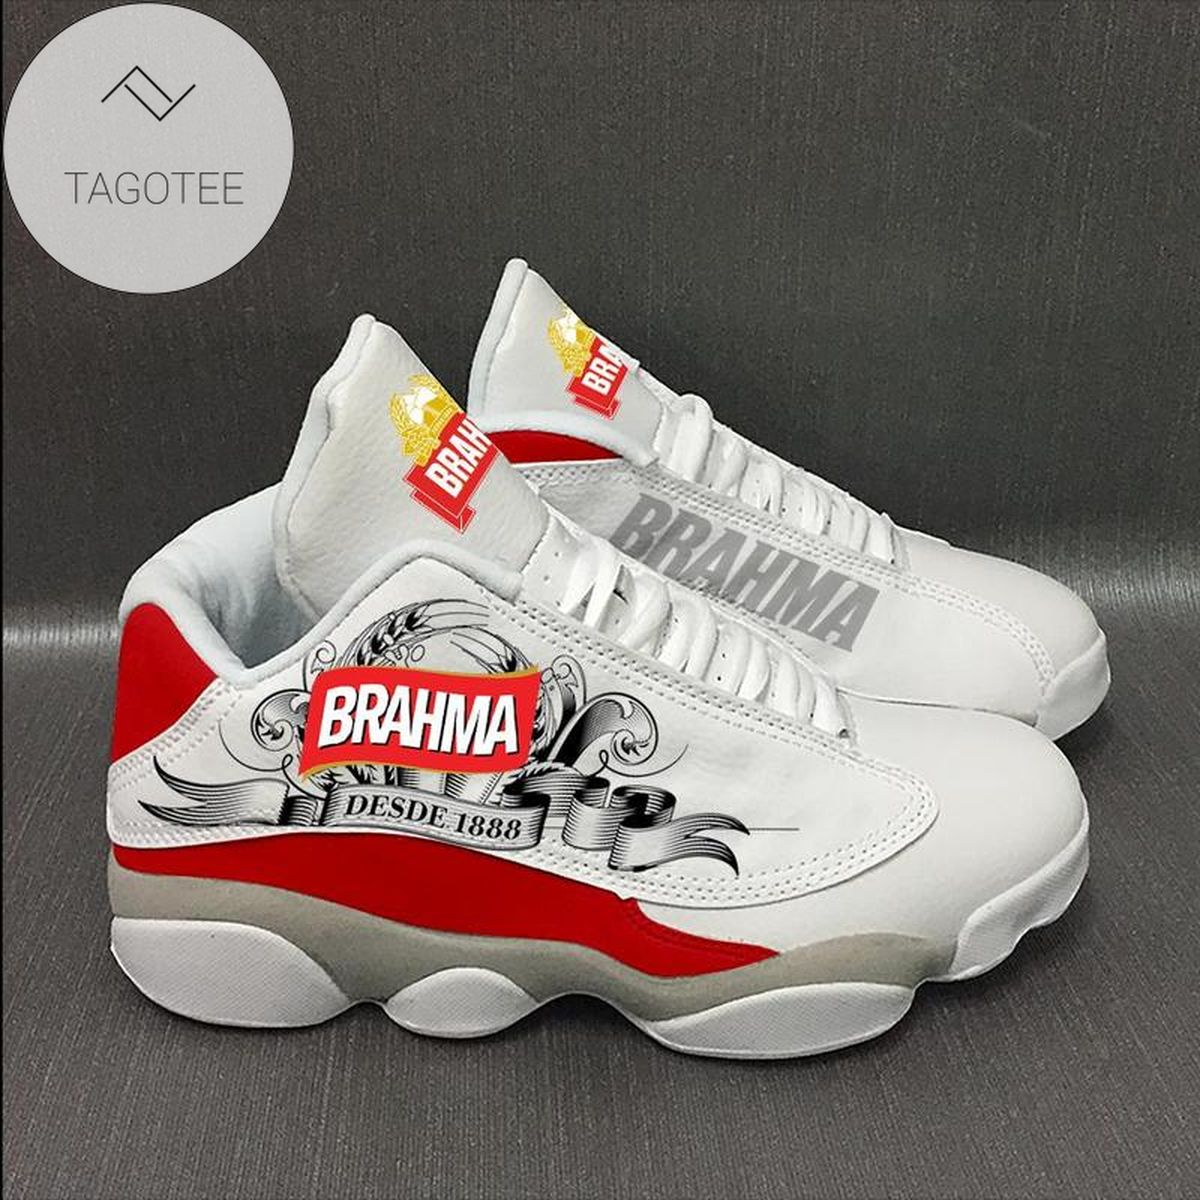 Brahma Beer Air Jordan 13 Shoes For Fan Sneakers